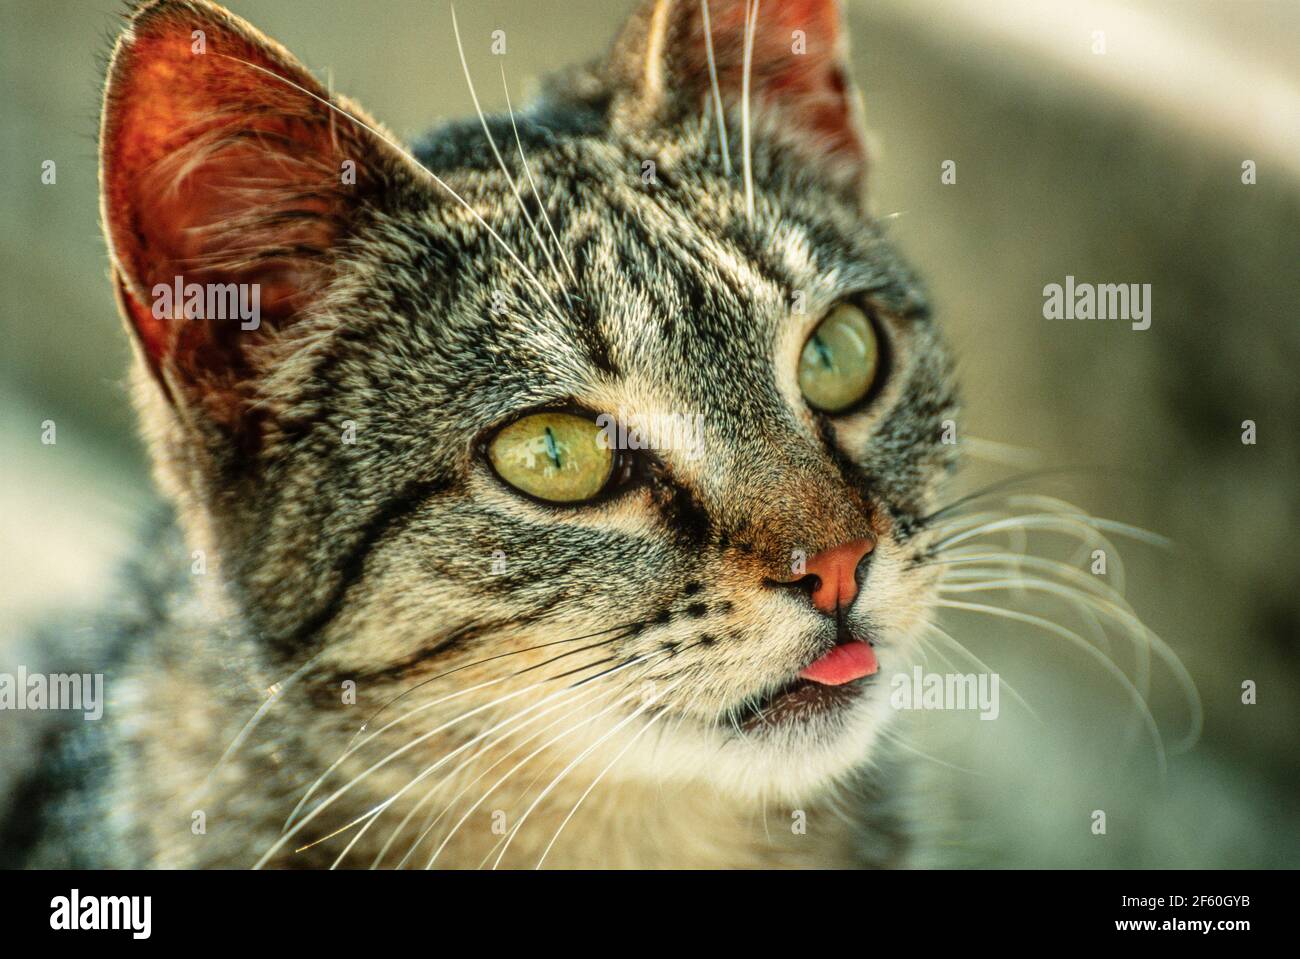 Tabby Katze mit Zunge heraus. Eine Tabby ist jede Hauskatze (Felis catus)  mit einer markanten M-förmigen Markierung auf der Stirn, Streifen an den  Augen und über die Wangen, entlang des Rückens und